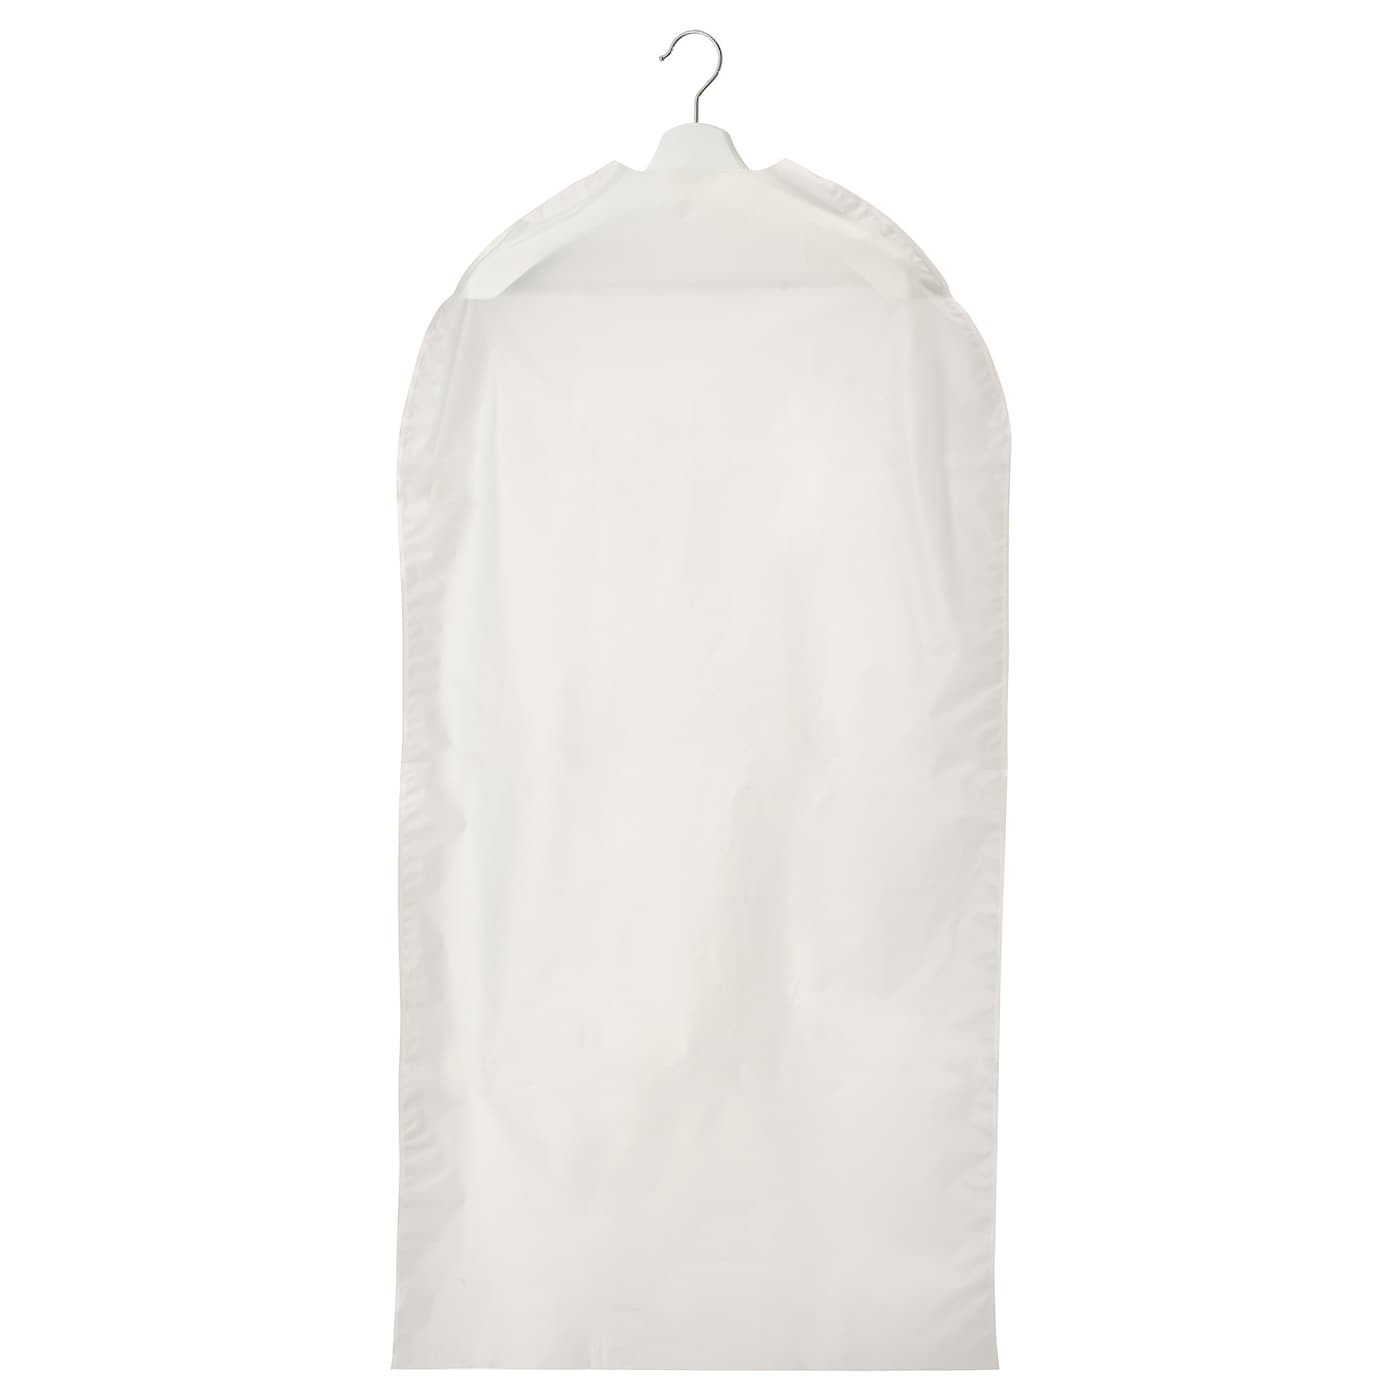 Чехол для одежды - RENSHACKA IKEA/РЕНШАККА  ИКЕА. 105х60 см, белый